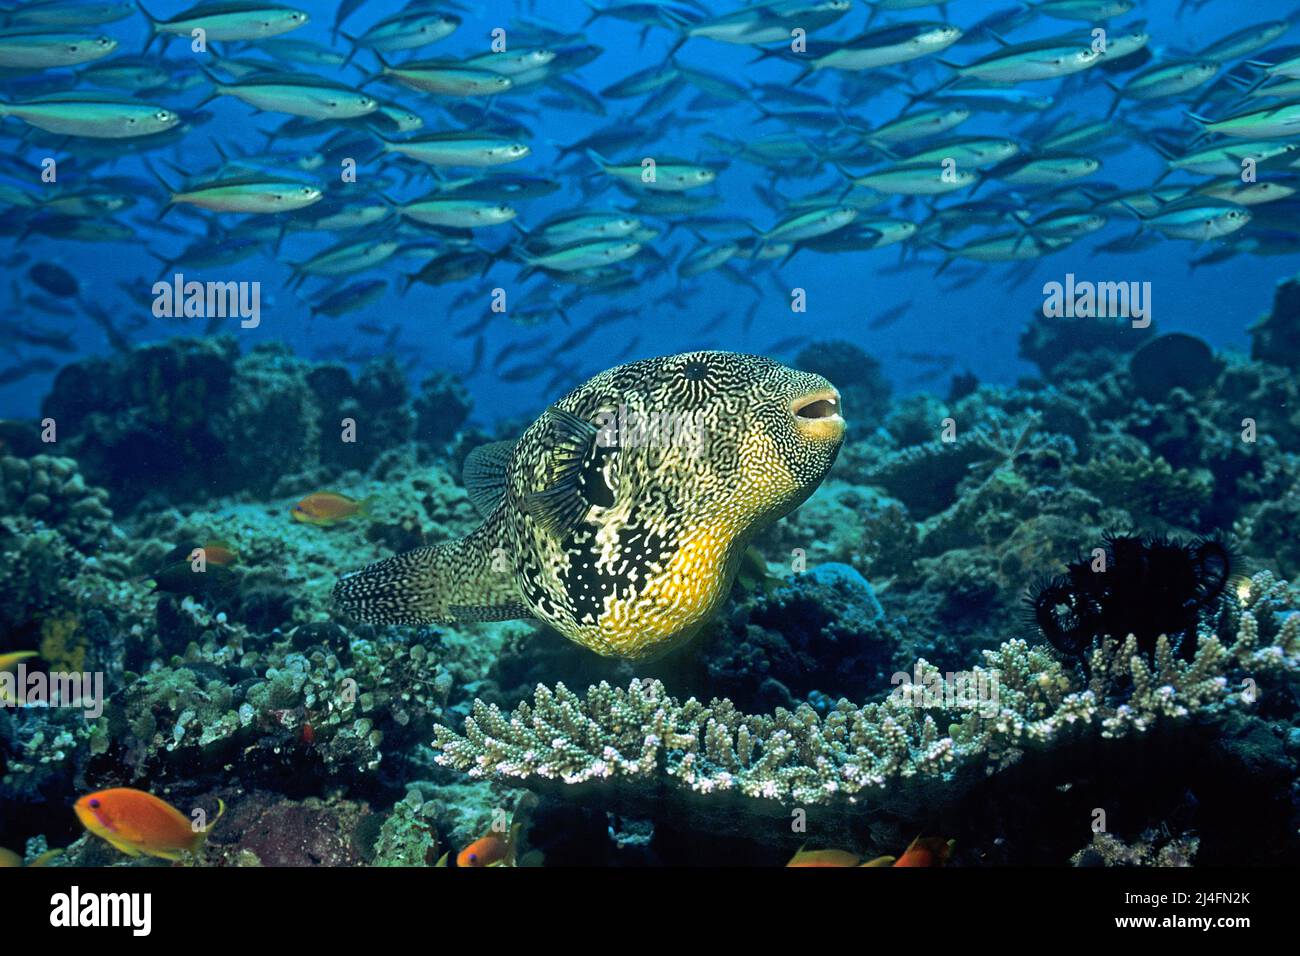 Mappa puffer (Arothron mappa) in una barriera corallina, dietro fusilier a bande scure, Neon fusilier (mattonella Pterocaesio), scuola, Atollo Ari, Maldive Foto Stock